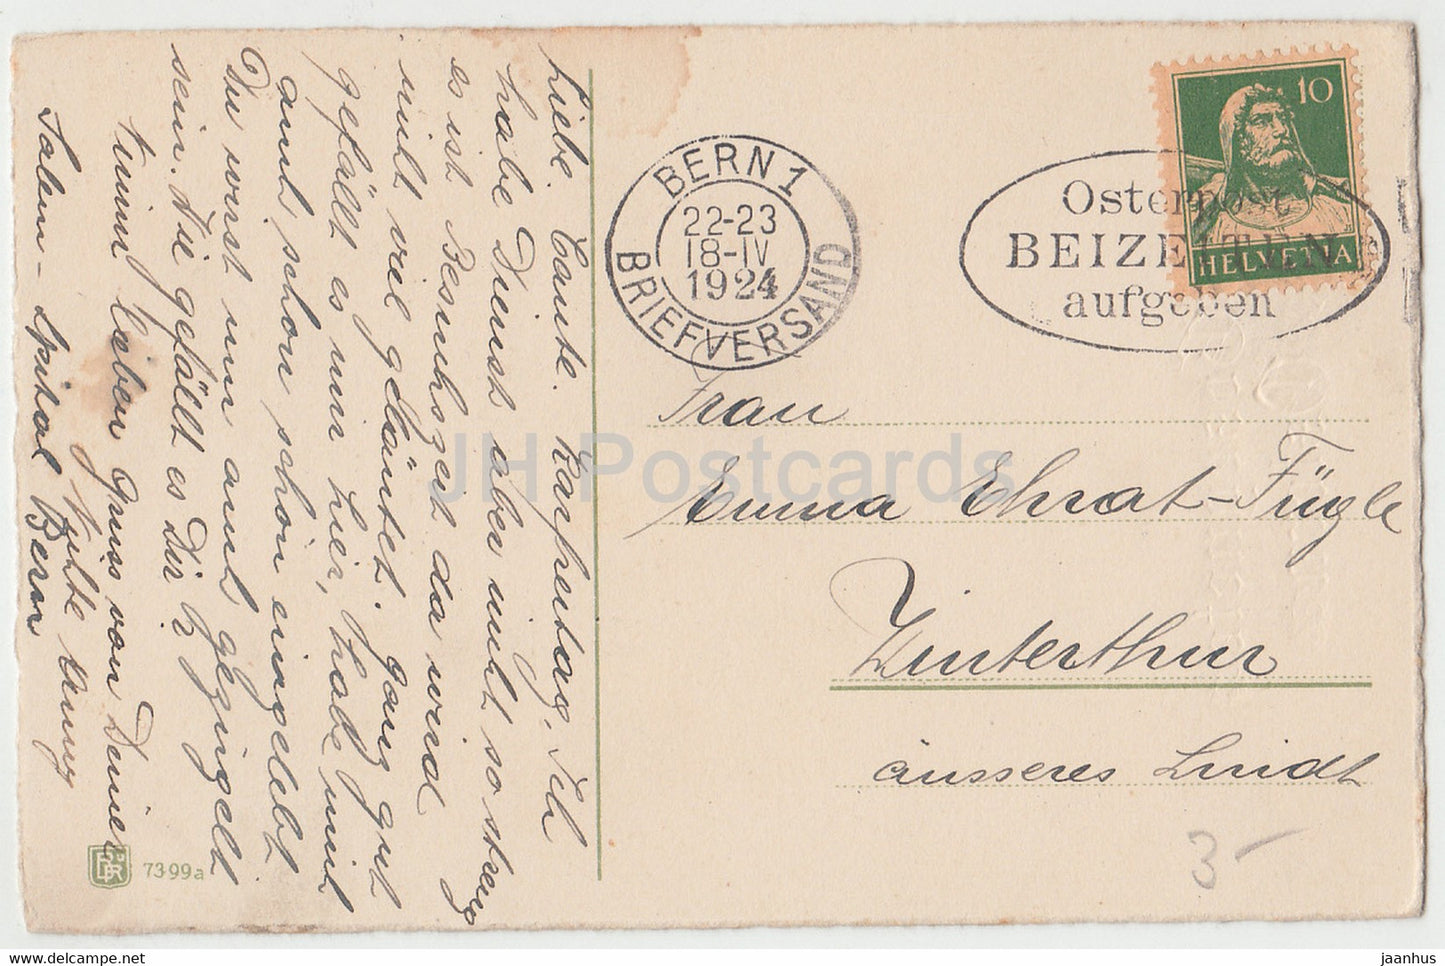 Carte de vœux de Pâques - Gesegnete Ostern - fleurs - narcisse - BR 7399 - carte postale ancienne - 1924 - Allemagne - utilisé